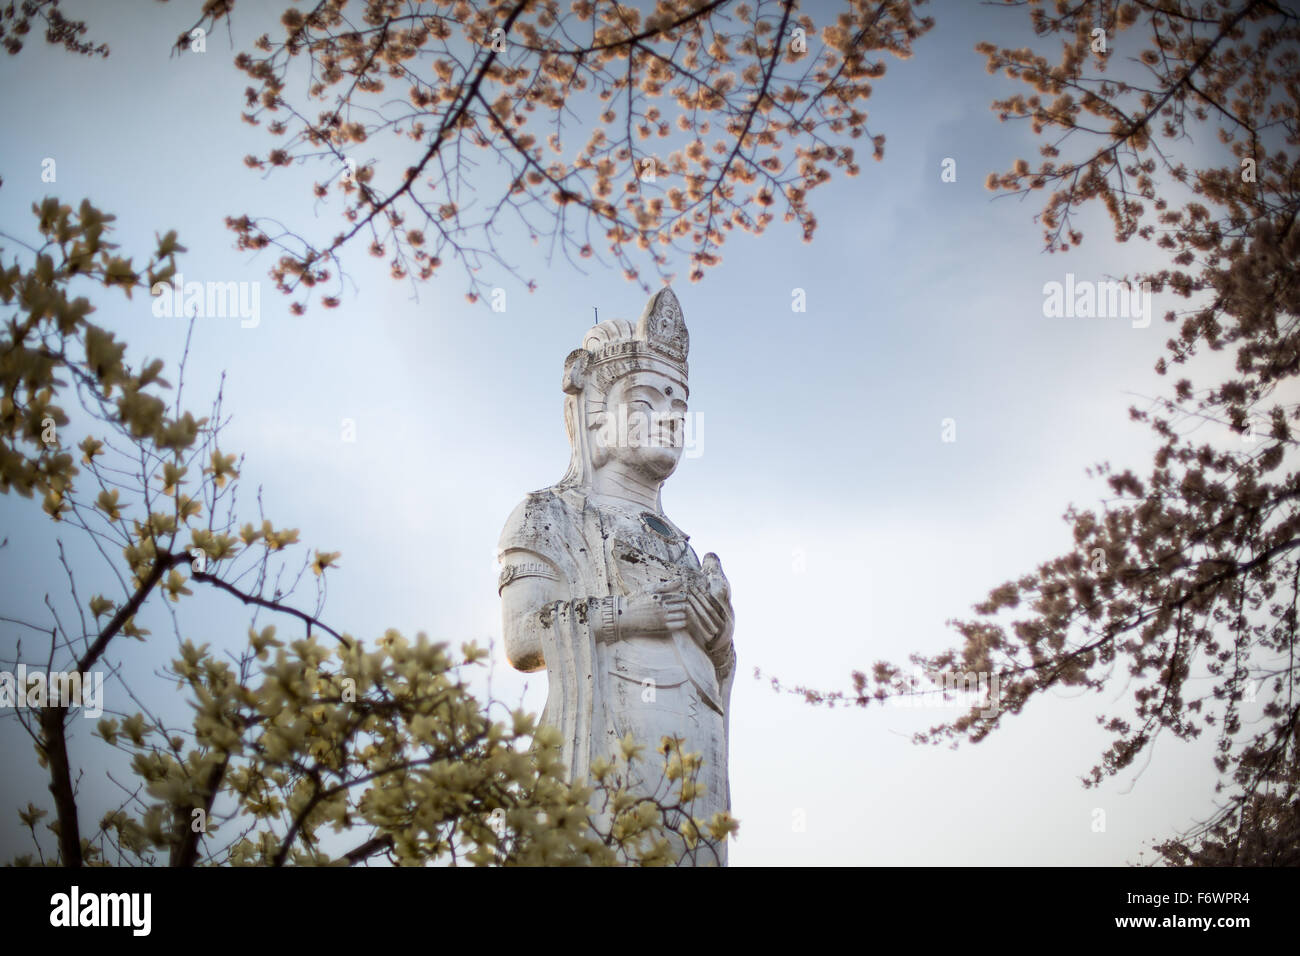 Guanyin with Sakura, Chinese Buddhism, The Goddess of Compassion at Funaoka Park - Shibata, Japan Stock Photo